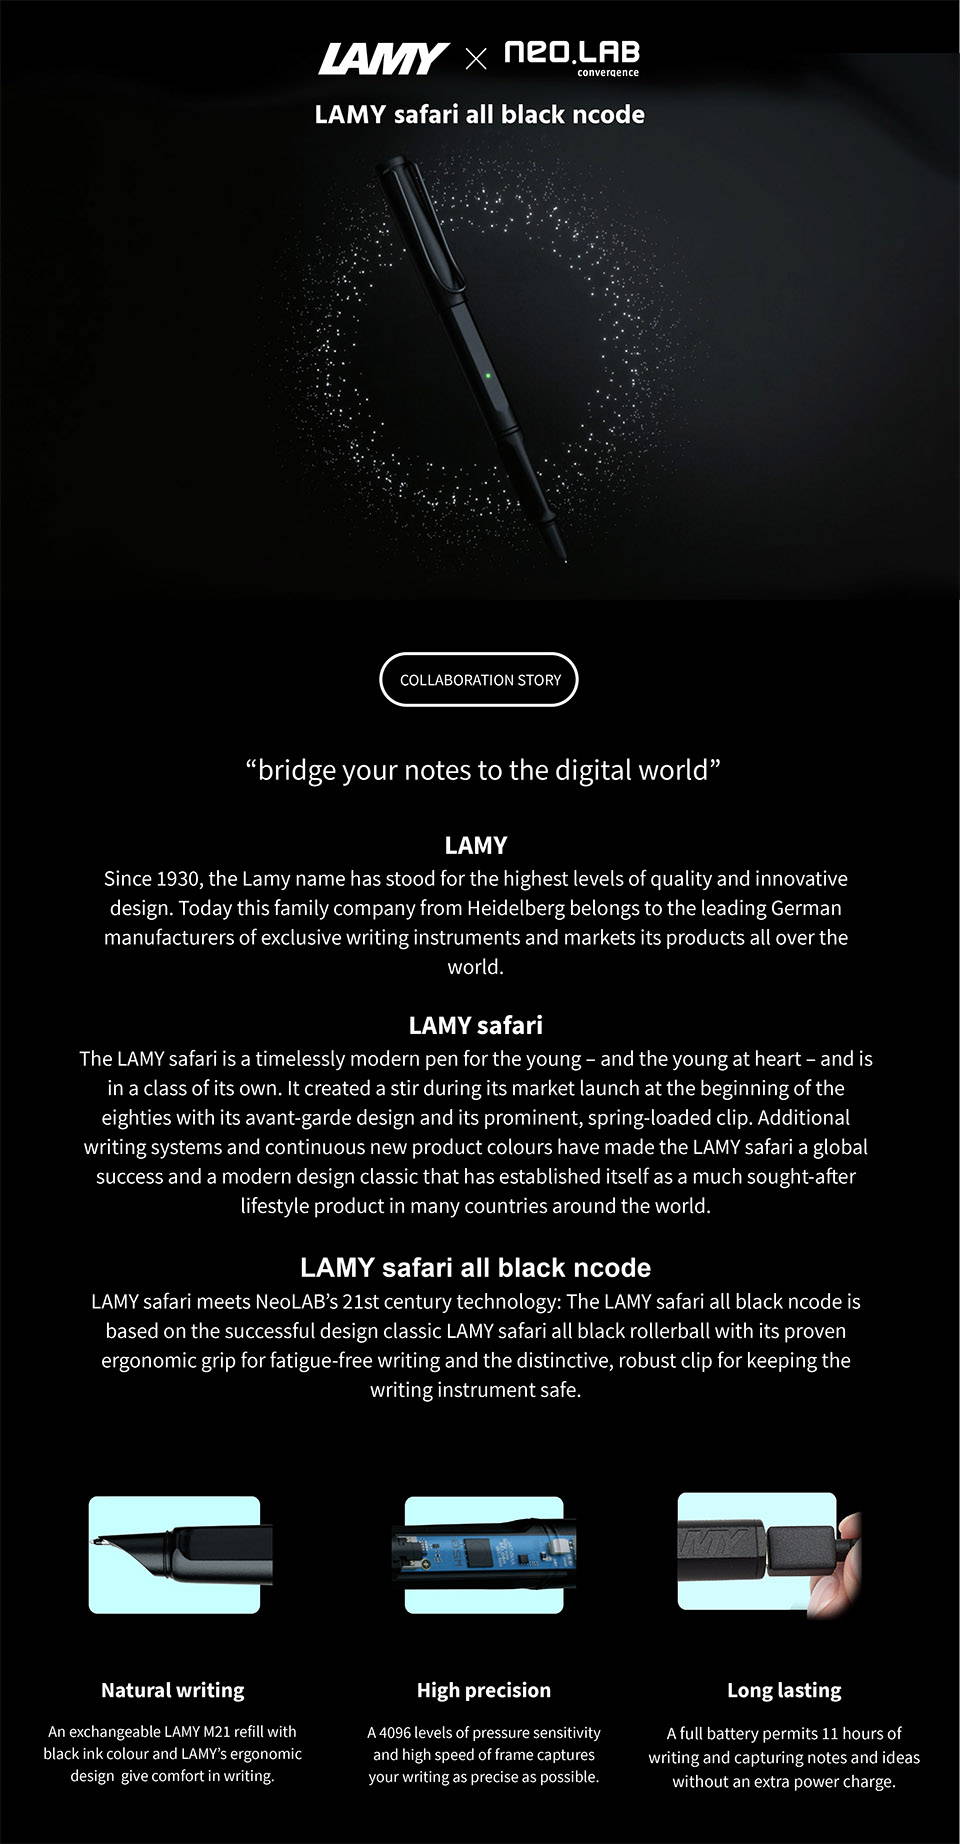 Single Set] LAMY Safari All Black Ncode – Neo smartpen